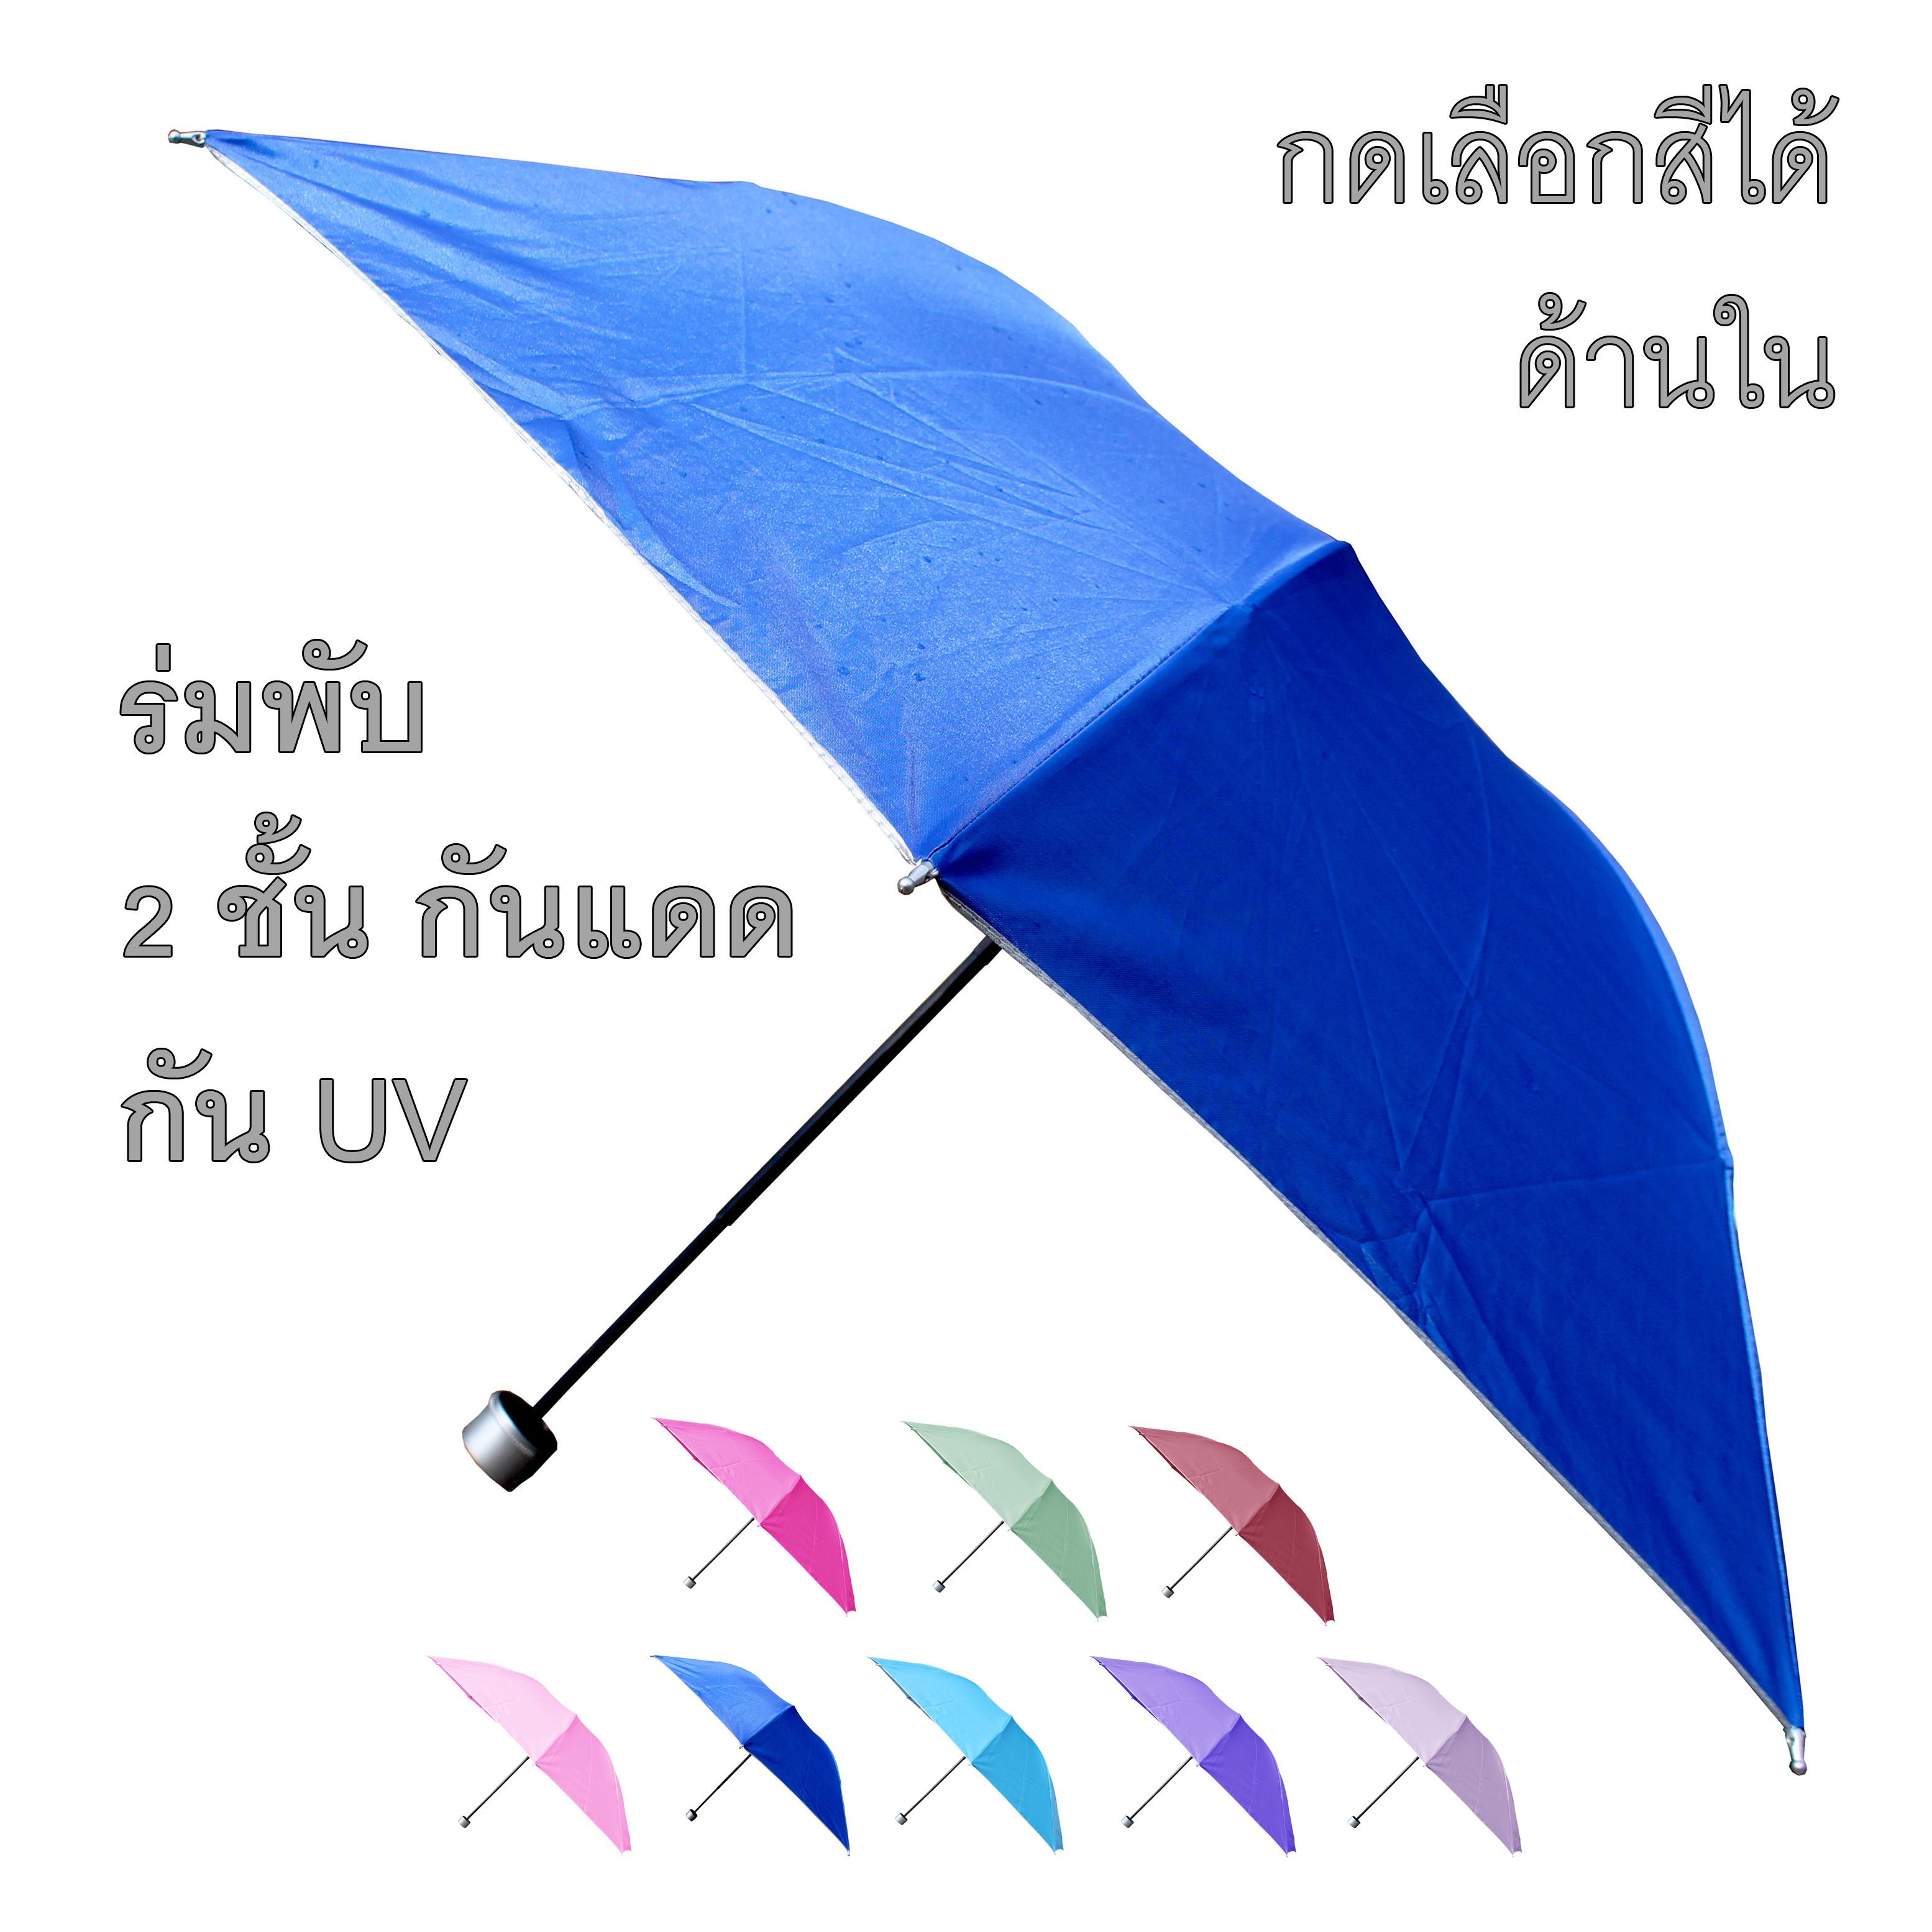 ร่มกันแดด ร่มกันฝน ร่มกันยูวี UV คุณภาพดีเลือกสีด้านใน